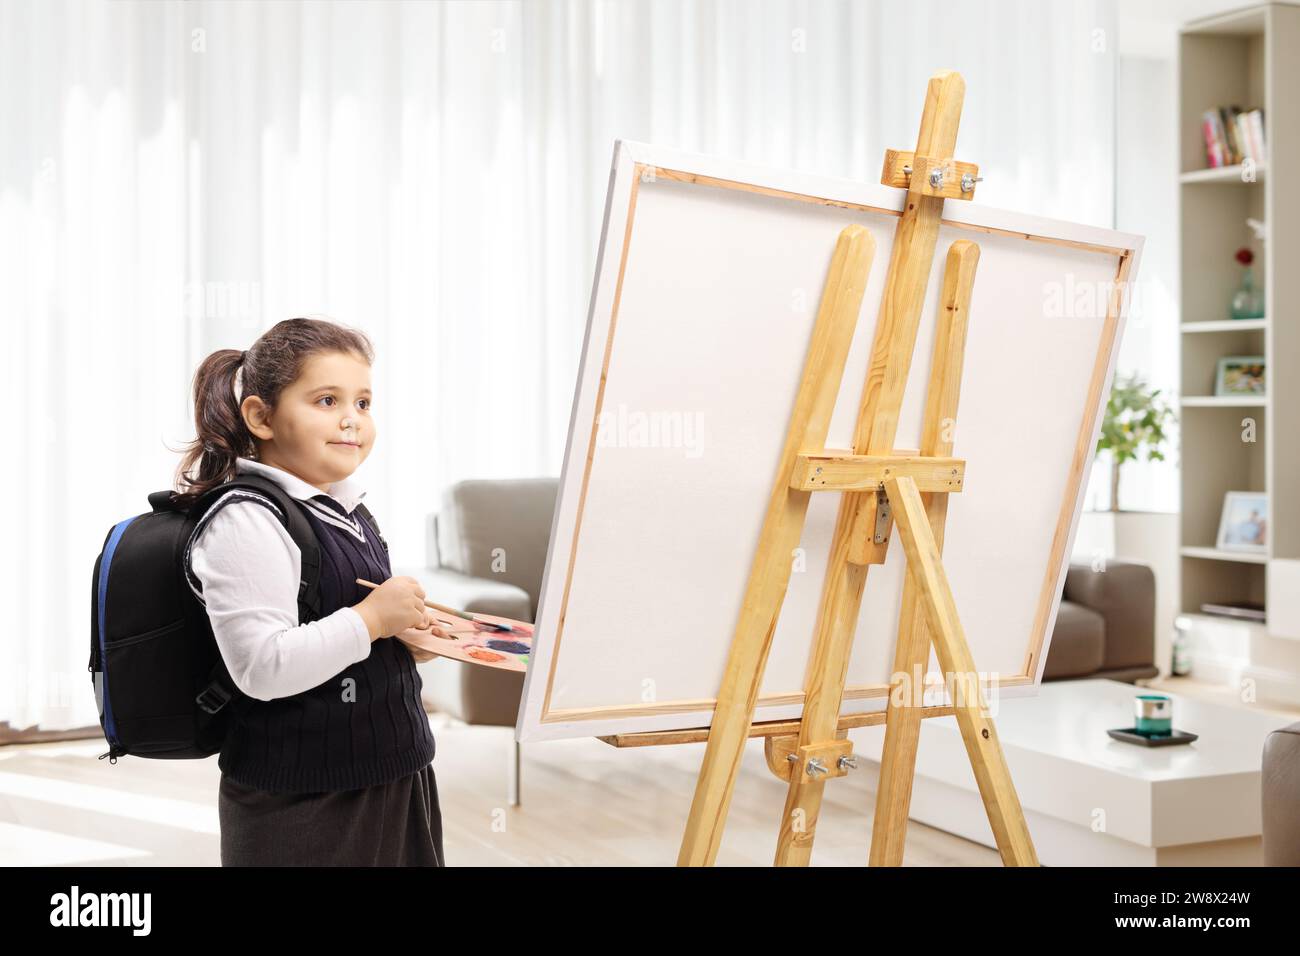 Das Schulmädchen hält eine Farbpalette und einen Pinsel und steht vor einer Leinwand in einem Raum Stockfoto